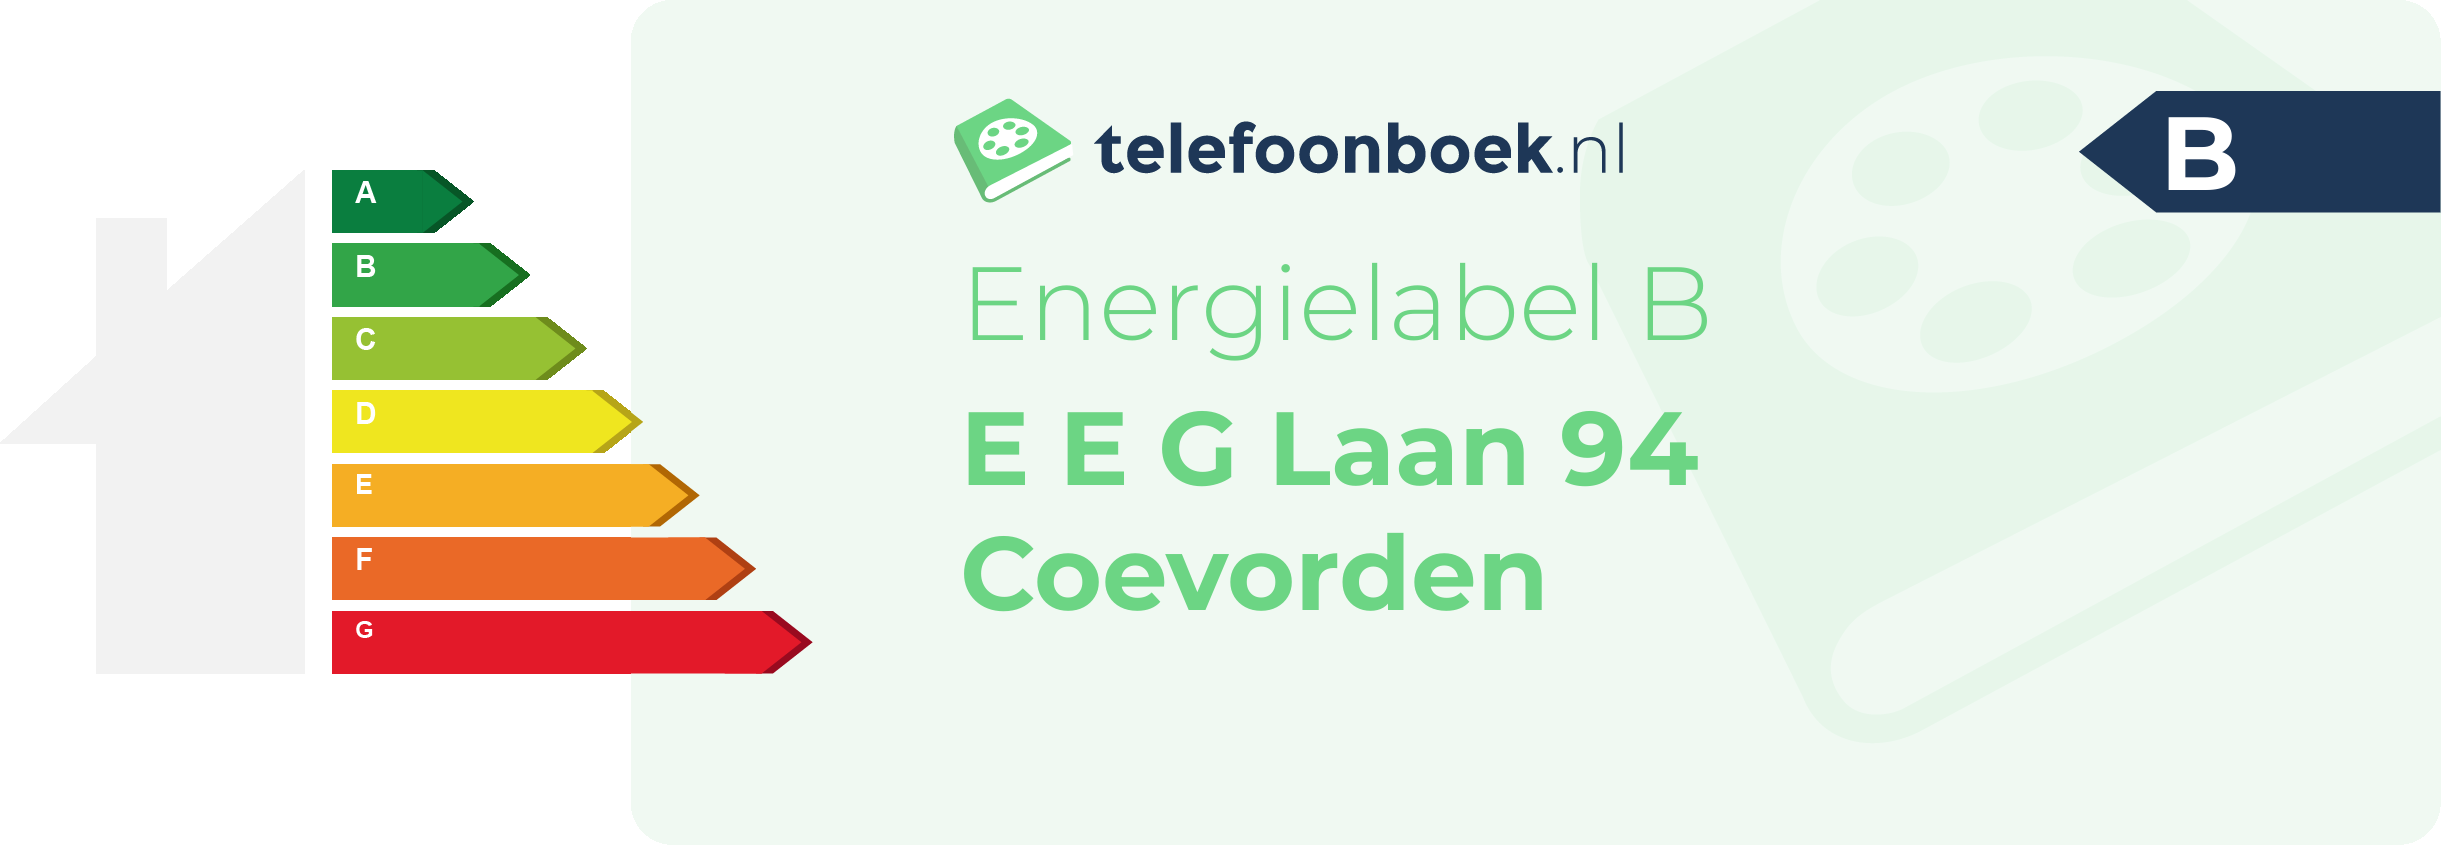 Energielabel E E G Laan 94 Coevorden